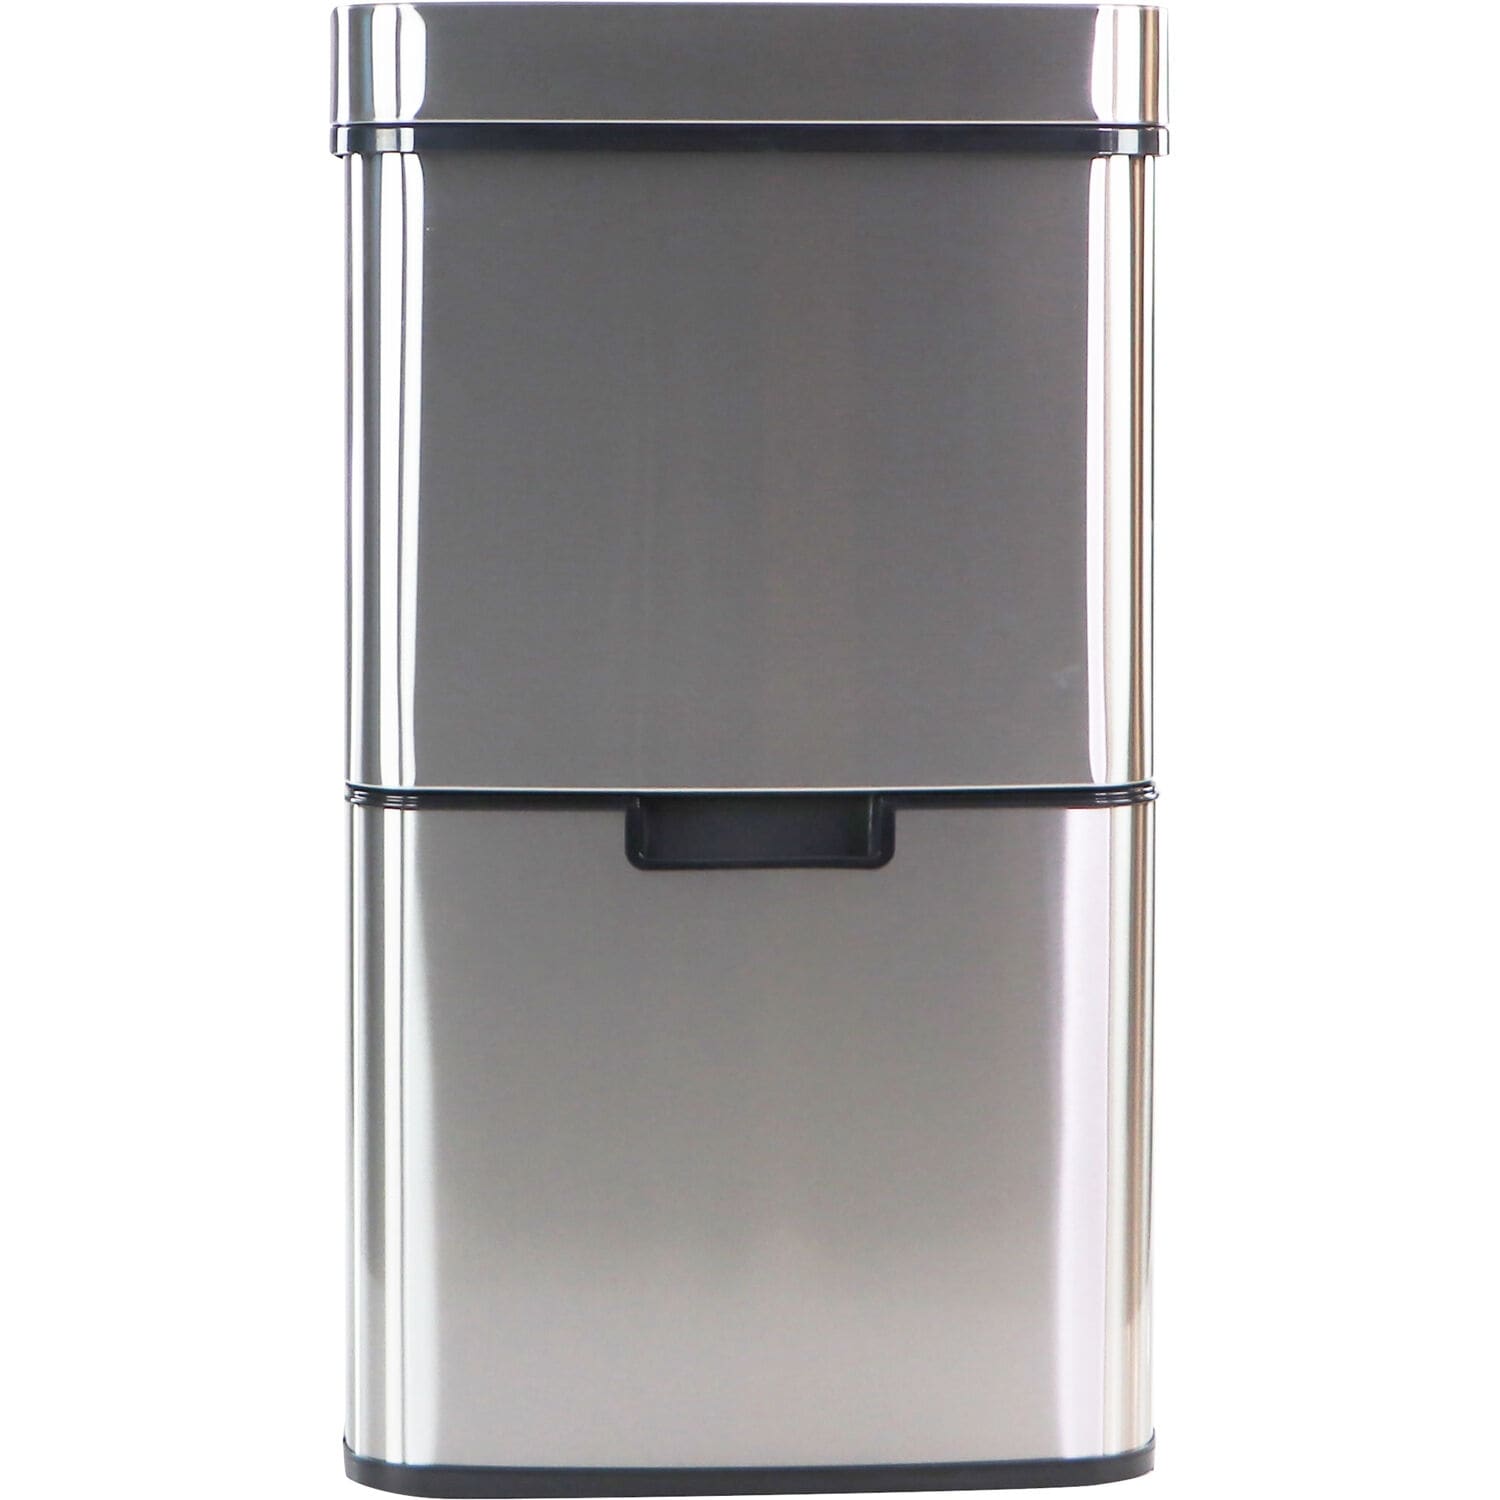 10 Liter - 2.6 Gallon Trash Can for Home and Kitchen, Fingerprint Smudge  Resistant, Soft Close, Sensor Lid